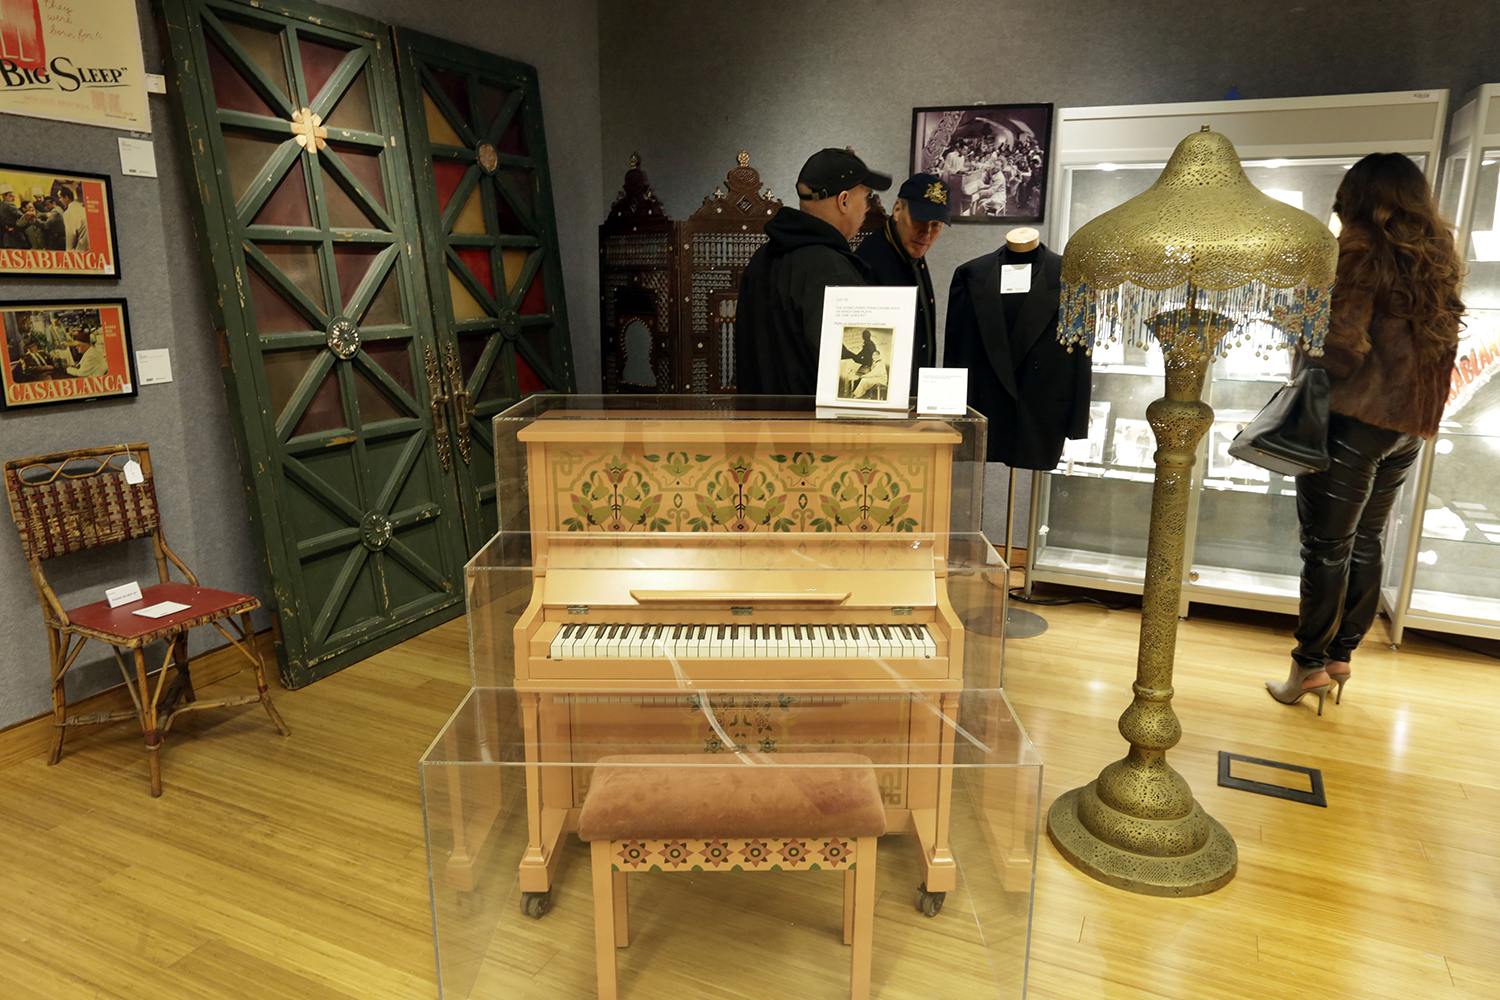 Subastan el piano de la película "Casablanca" en 3,4 millones de dolares